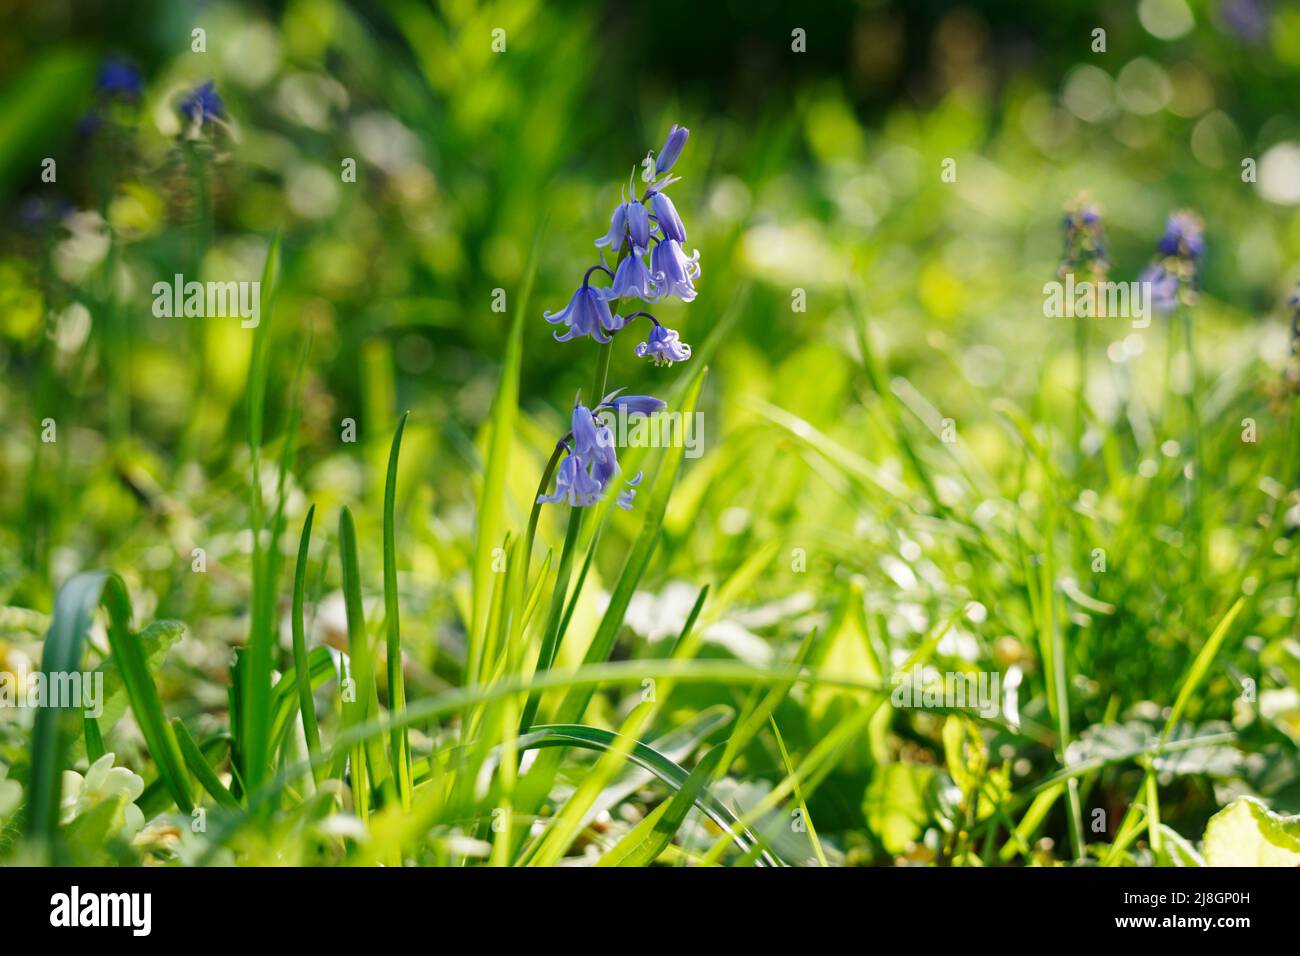 Bluebells (hyacinthoides non scripta) in a garden Stock Photo